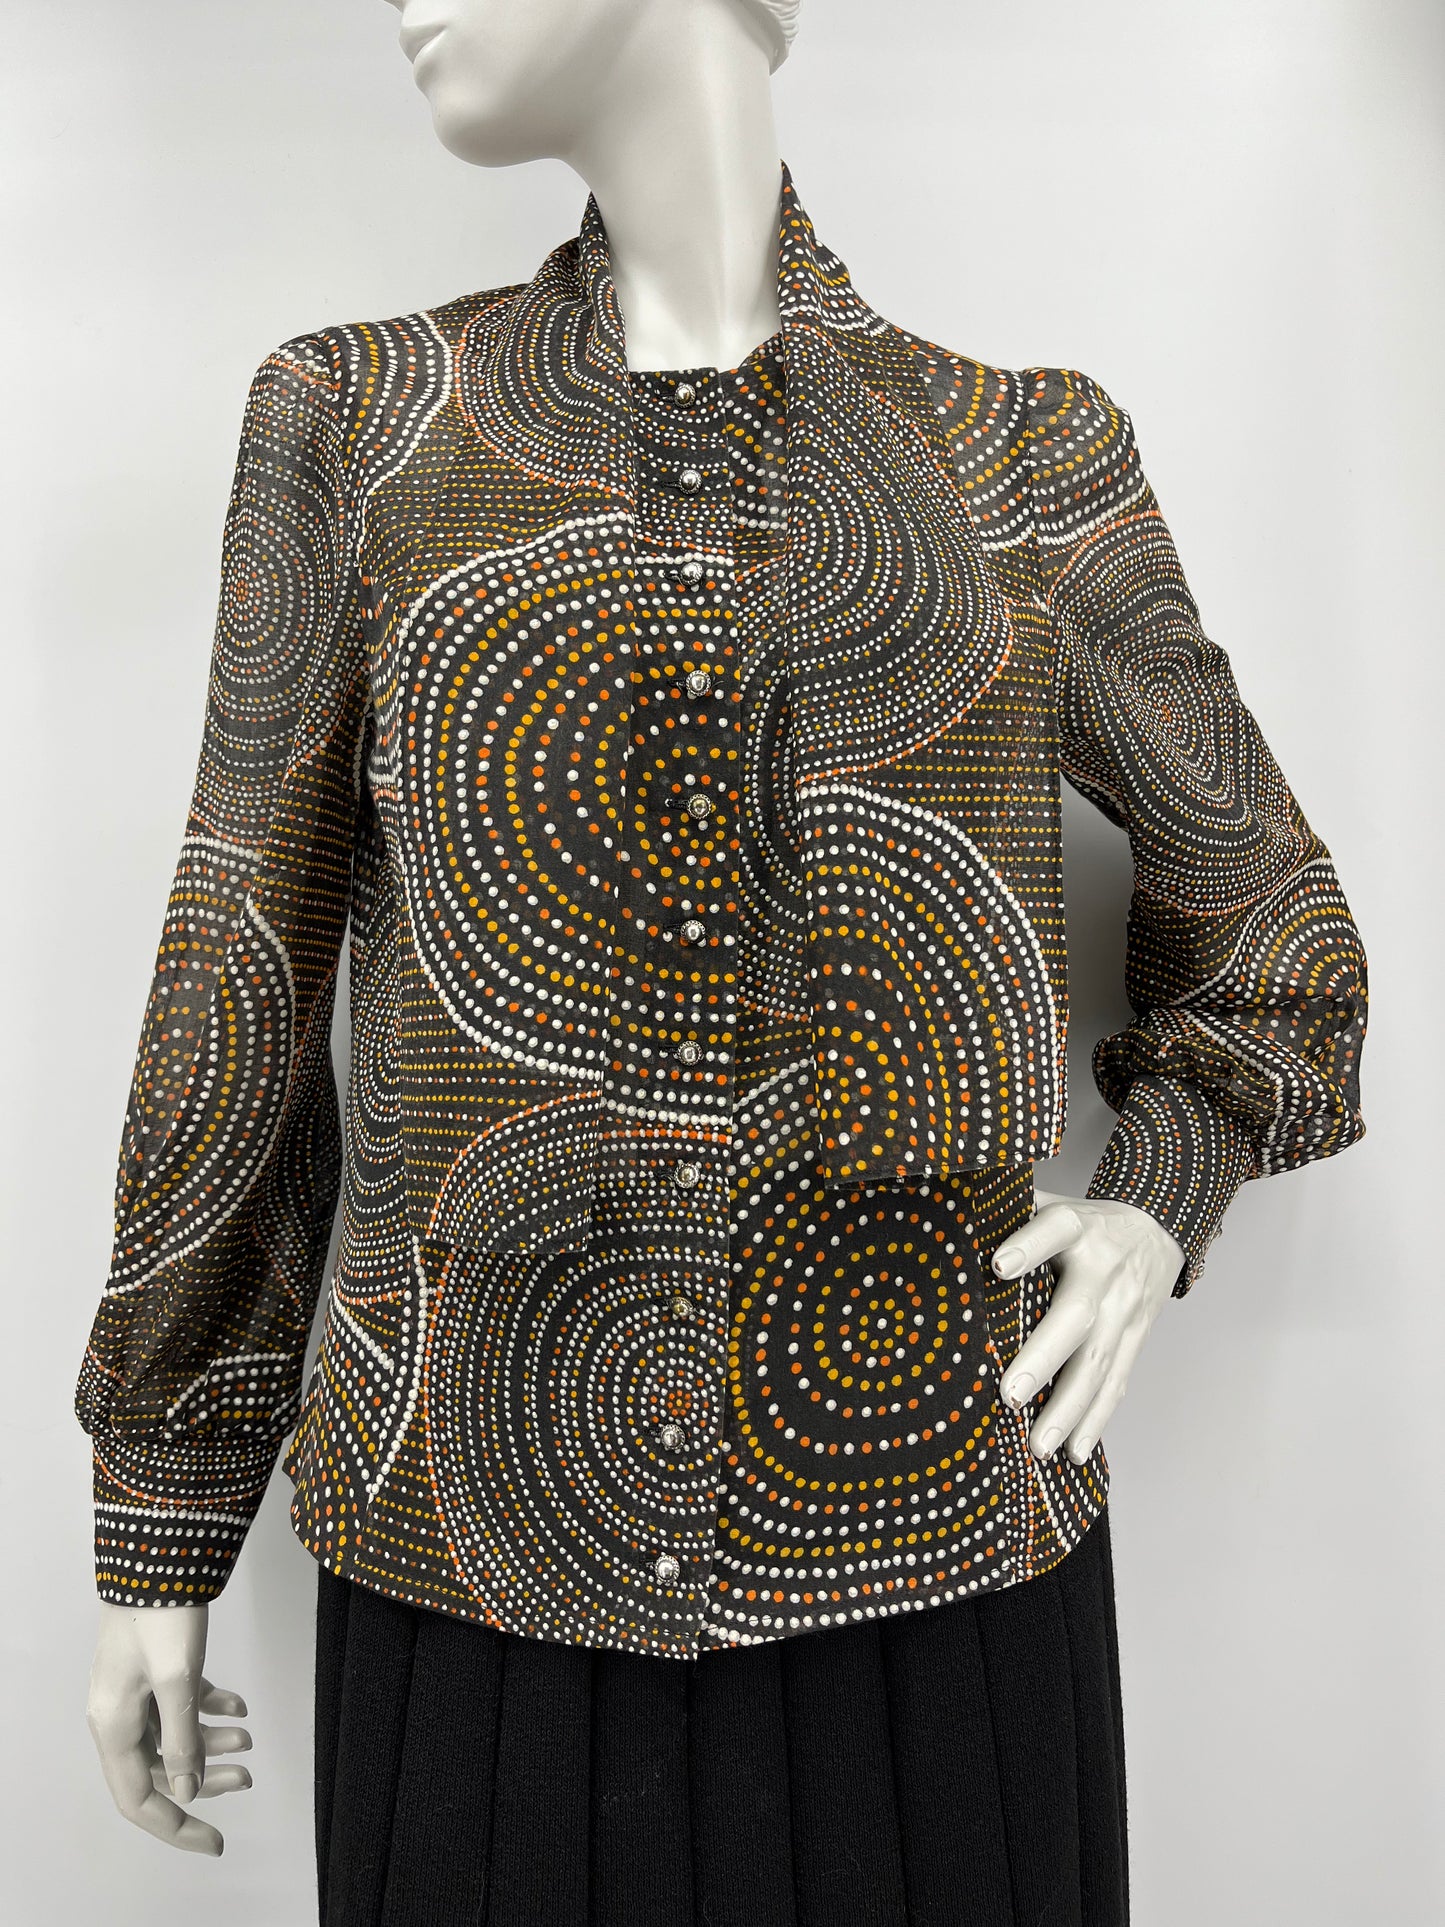 Tiklas, ruskeasävyinen paitapusero ja vyö, 60-luku, koko 36-38